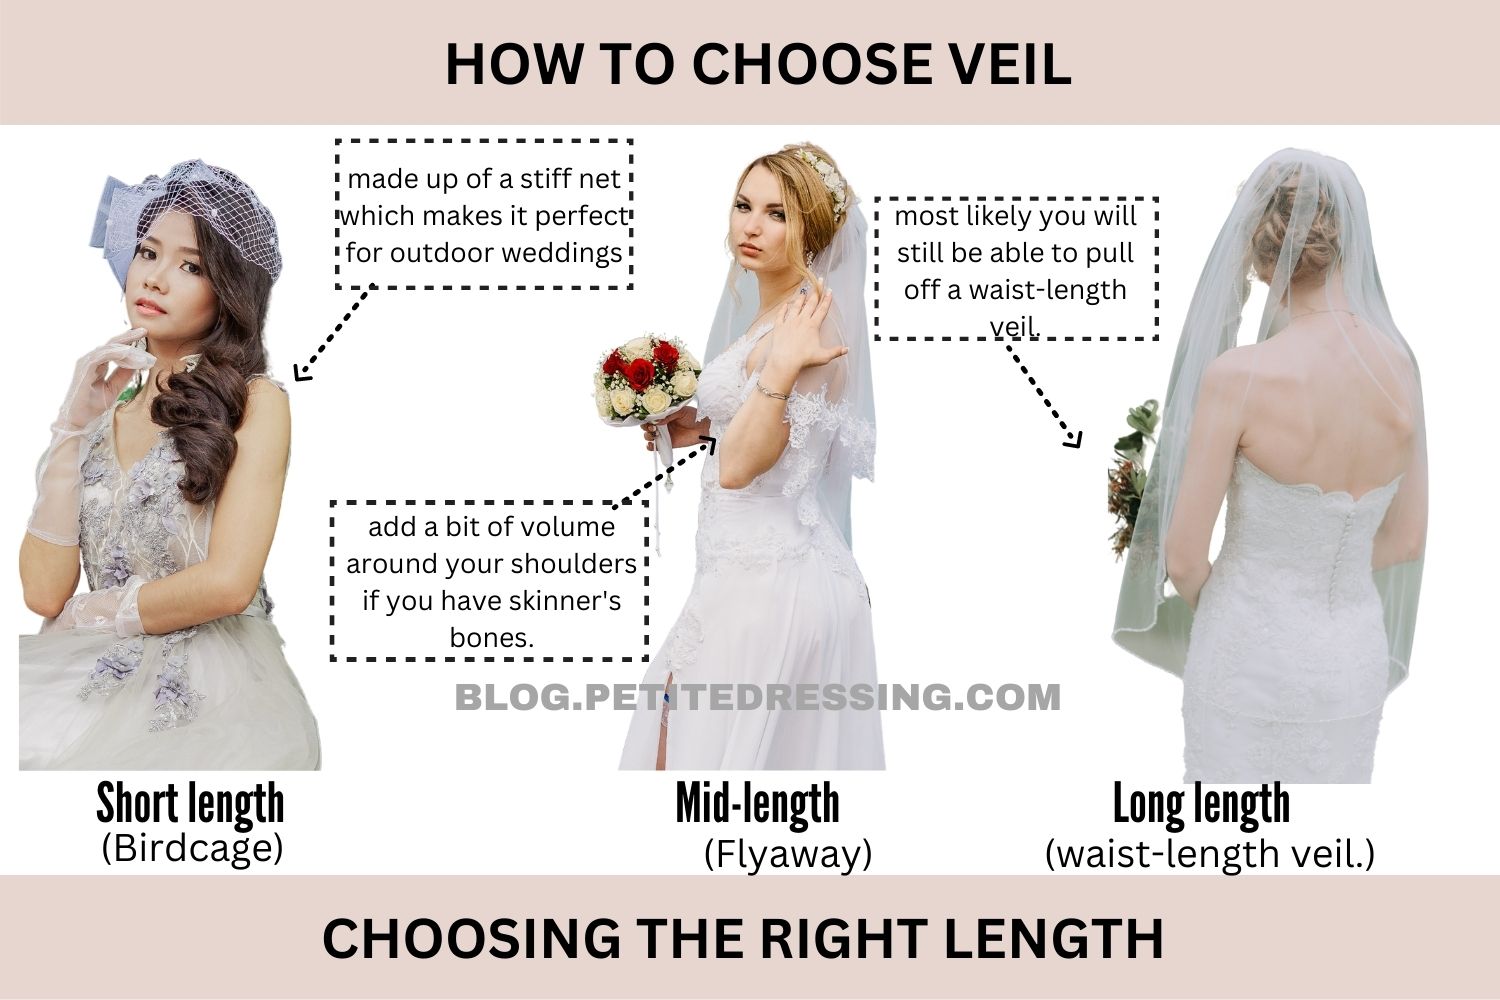 https://blog.petitedressing.com/wp-content/uploads/2019/03/Choosing-the-Right-Length-.jpg